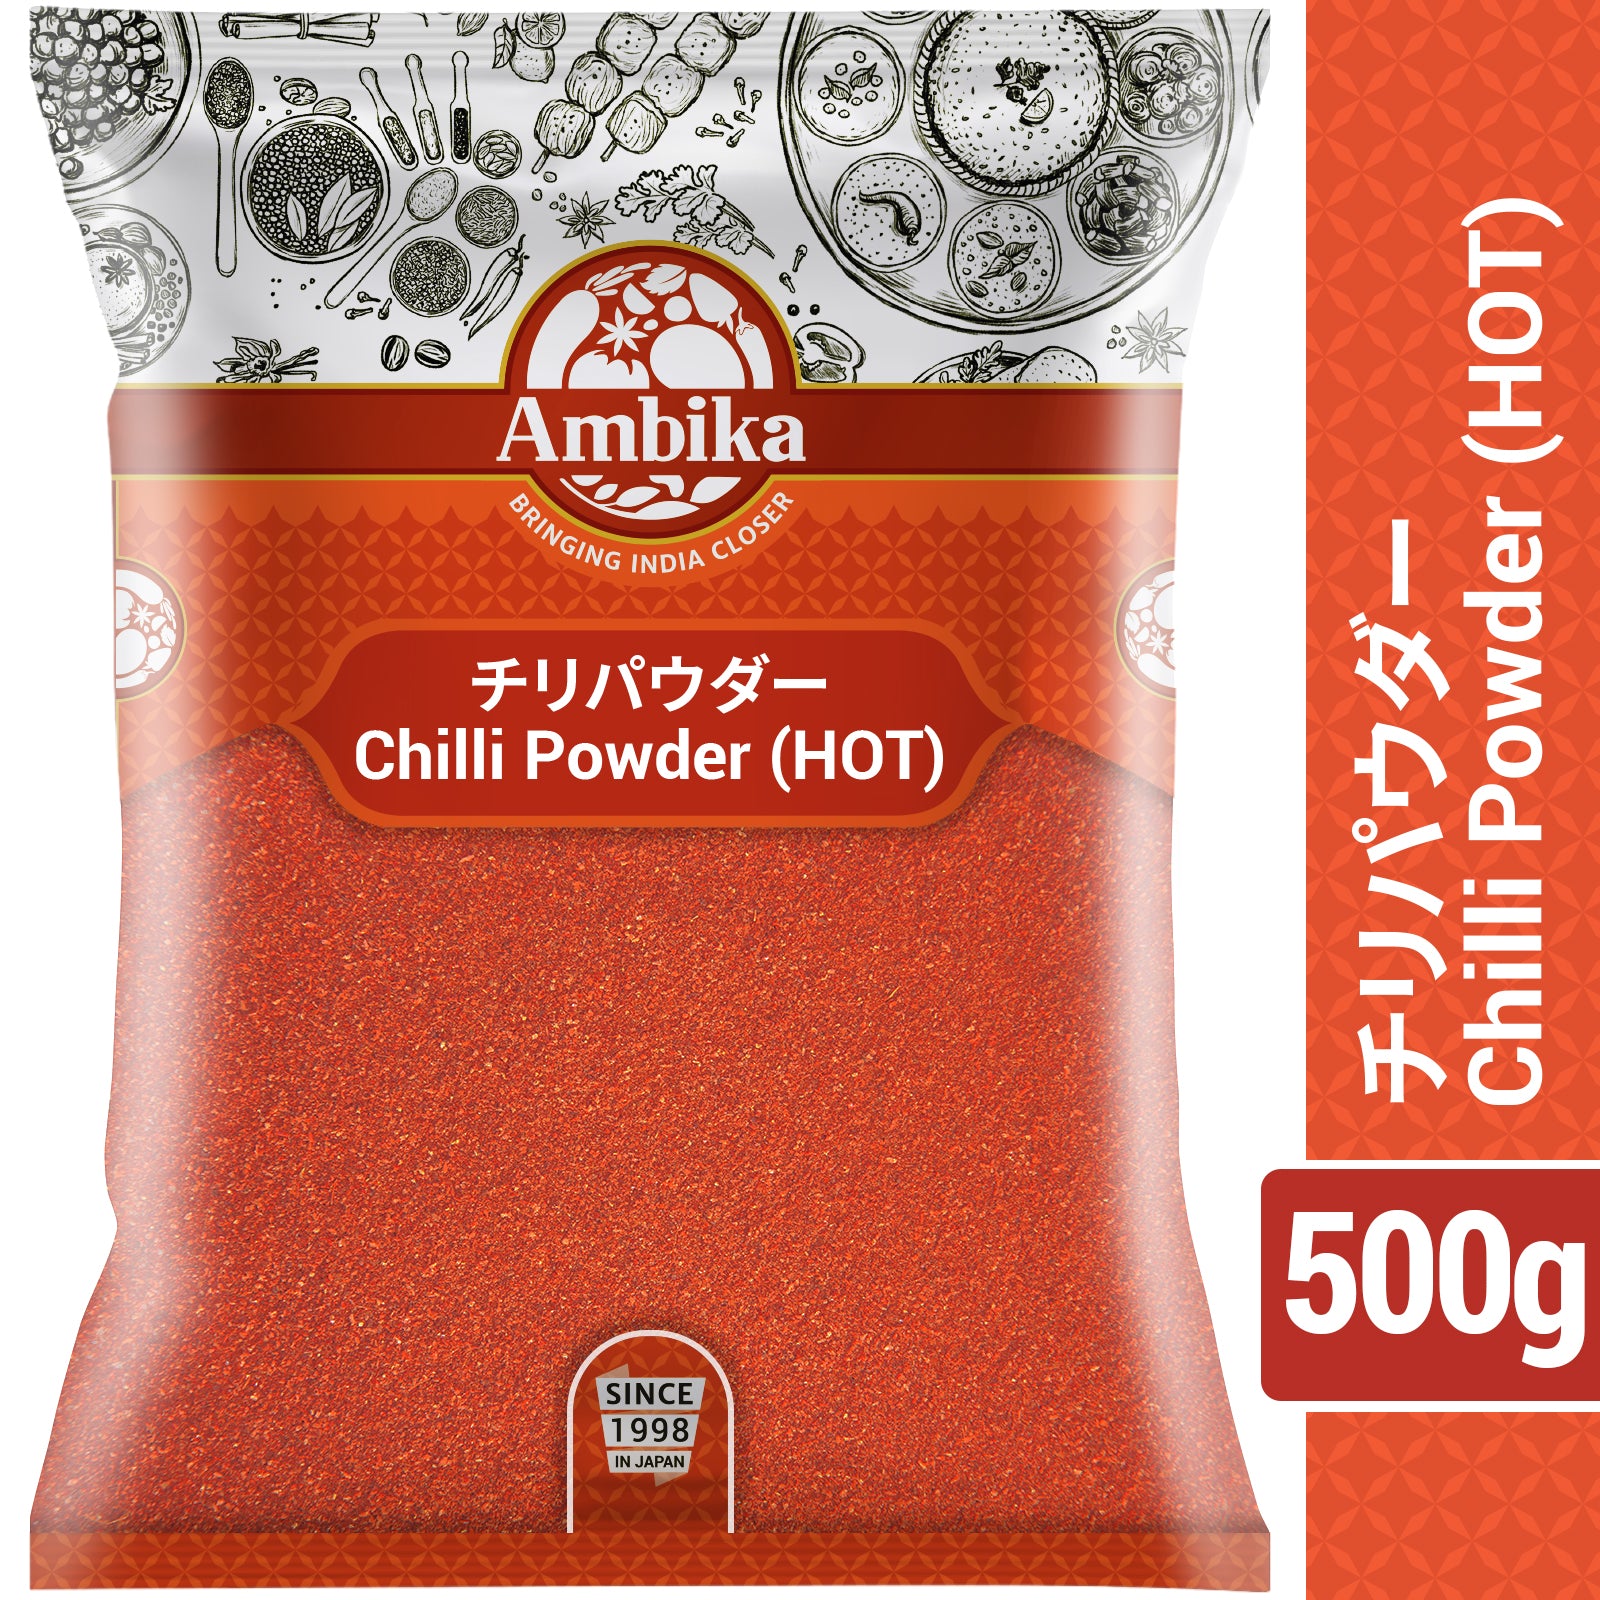 Ambika Chilli Powder Hot 500g